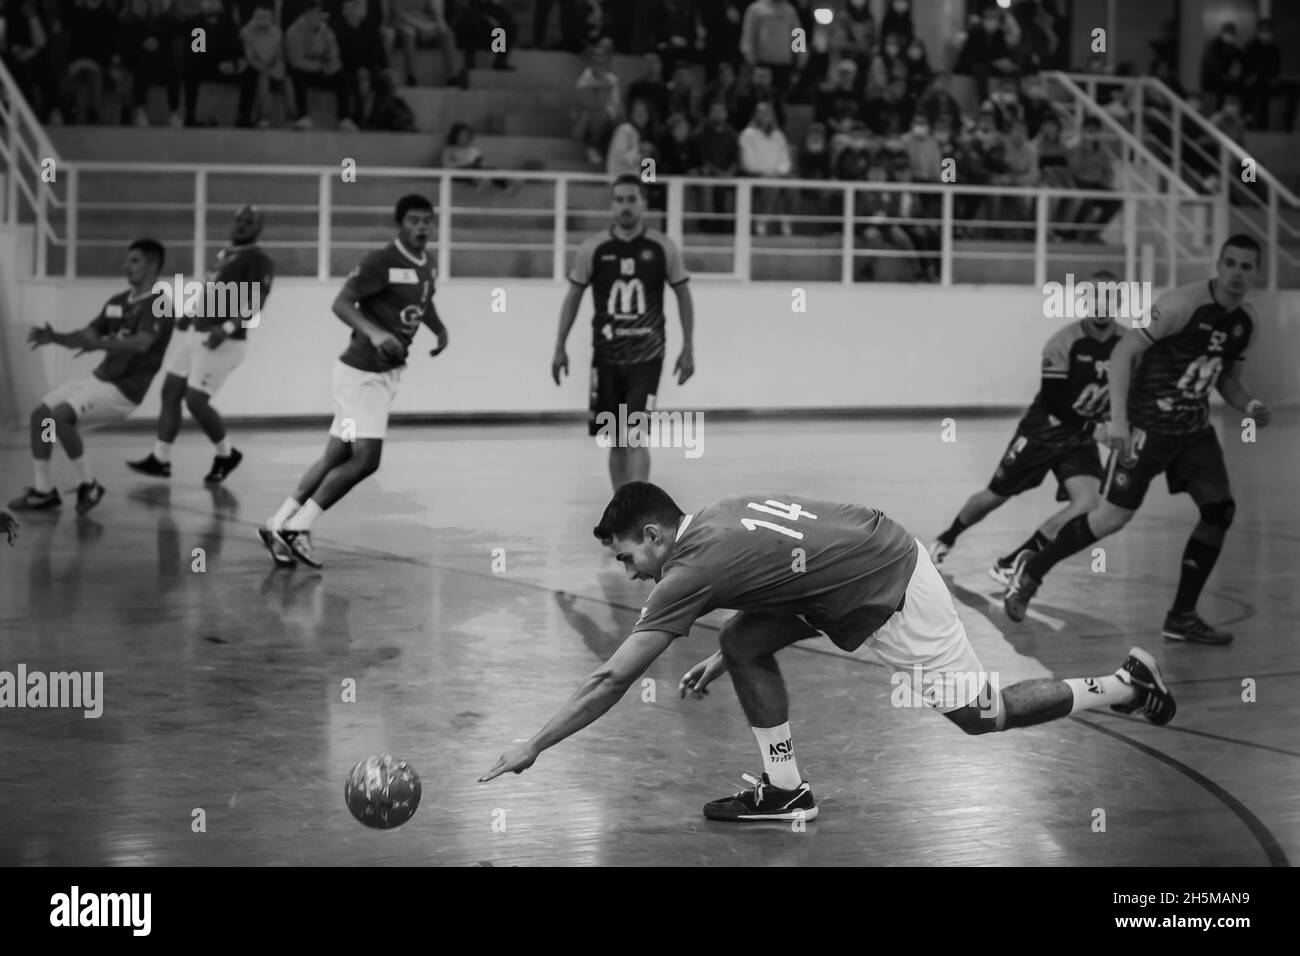 Viana do Castelo, Portugal - 30 octobre 2021: A.D. Aficense joueur en action contre Manabola, compte de jeu pour la 3ème division nationale de Handball. Banque D'Images